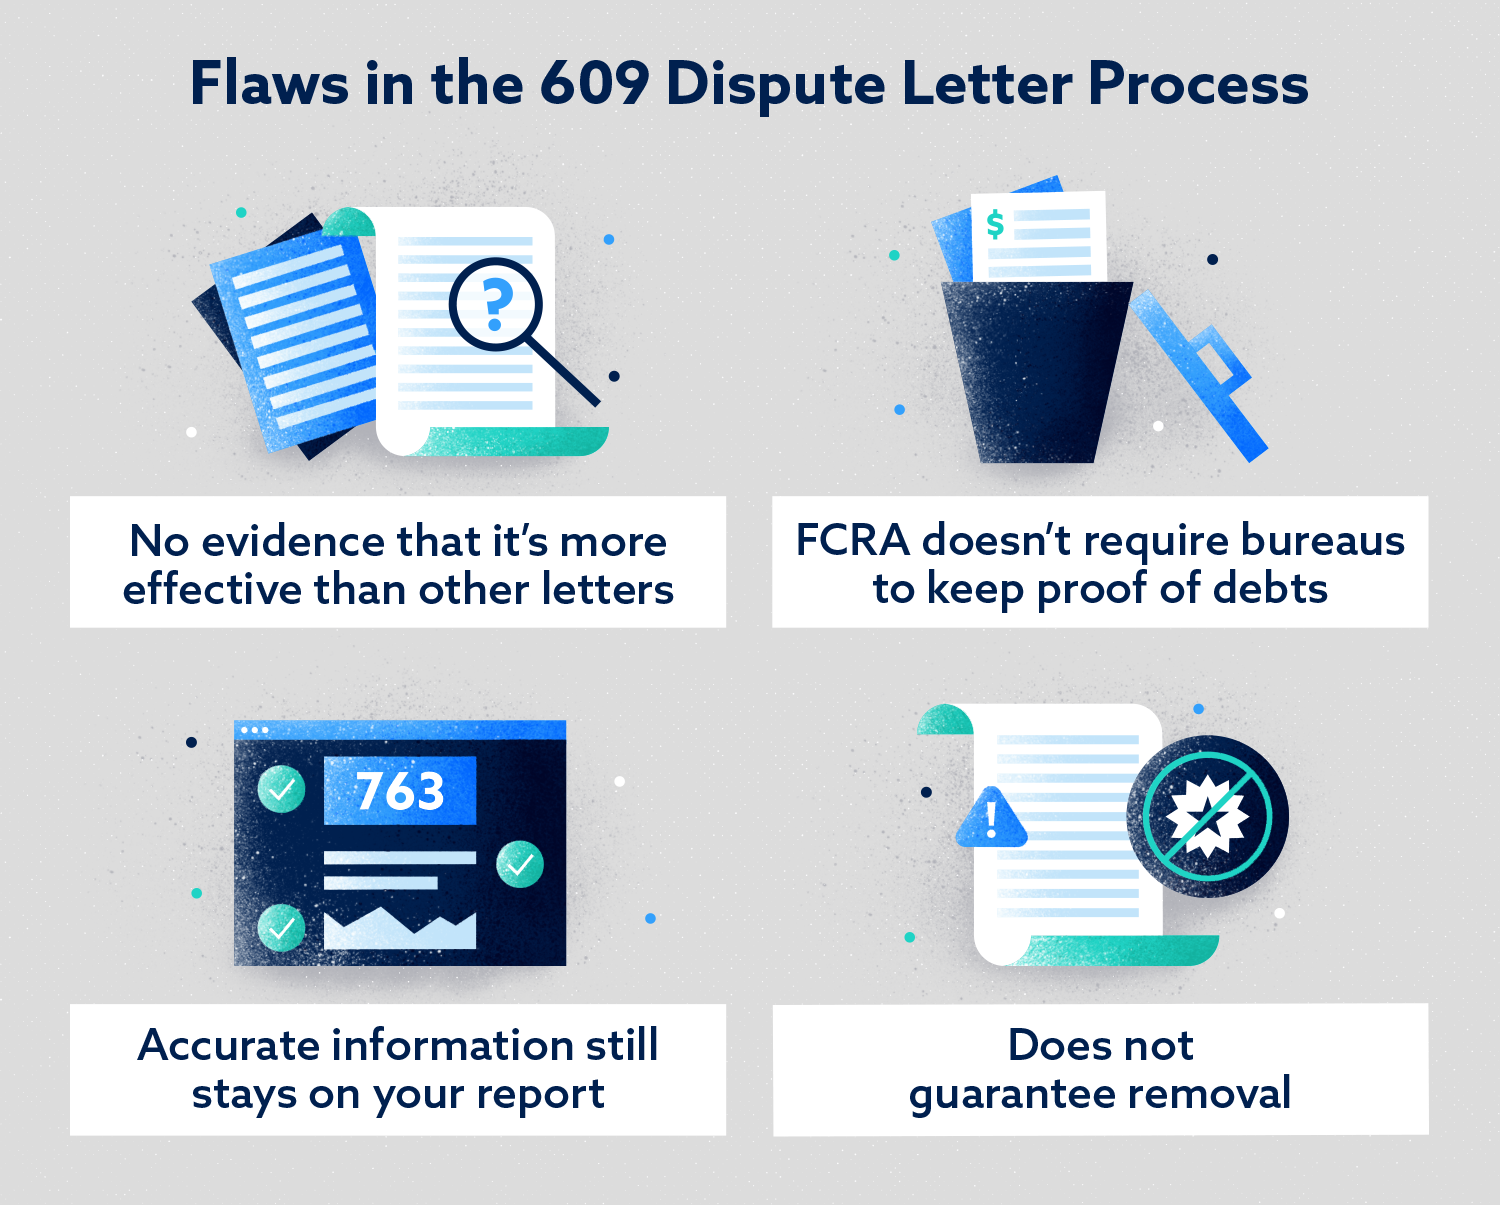 Defectos en la imagen de proceso de carta de disputa 609